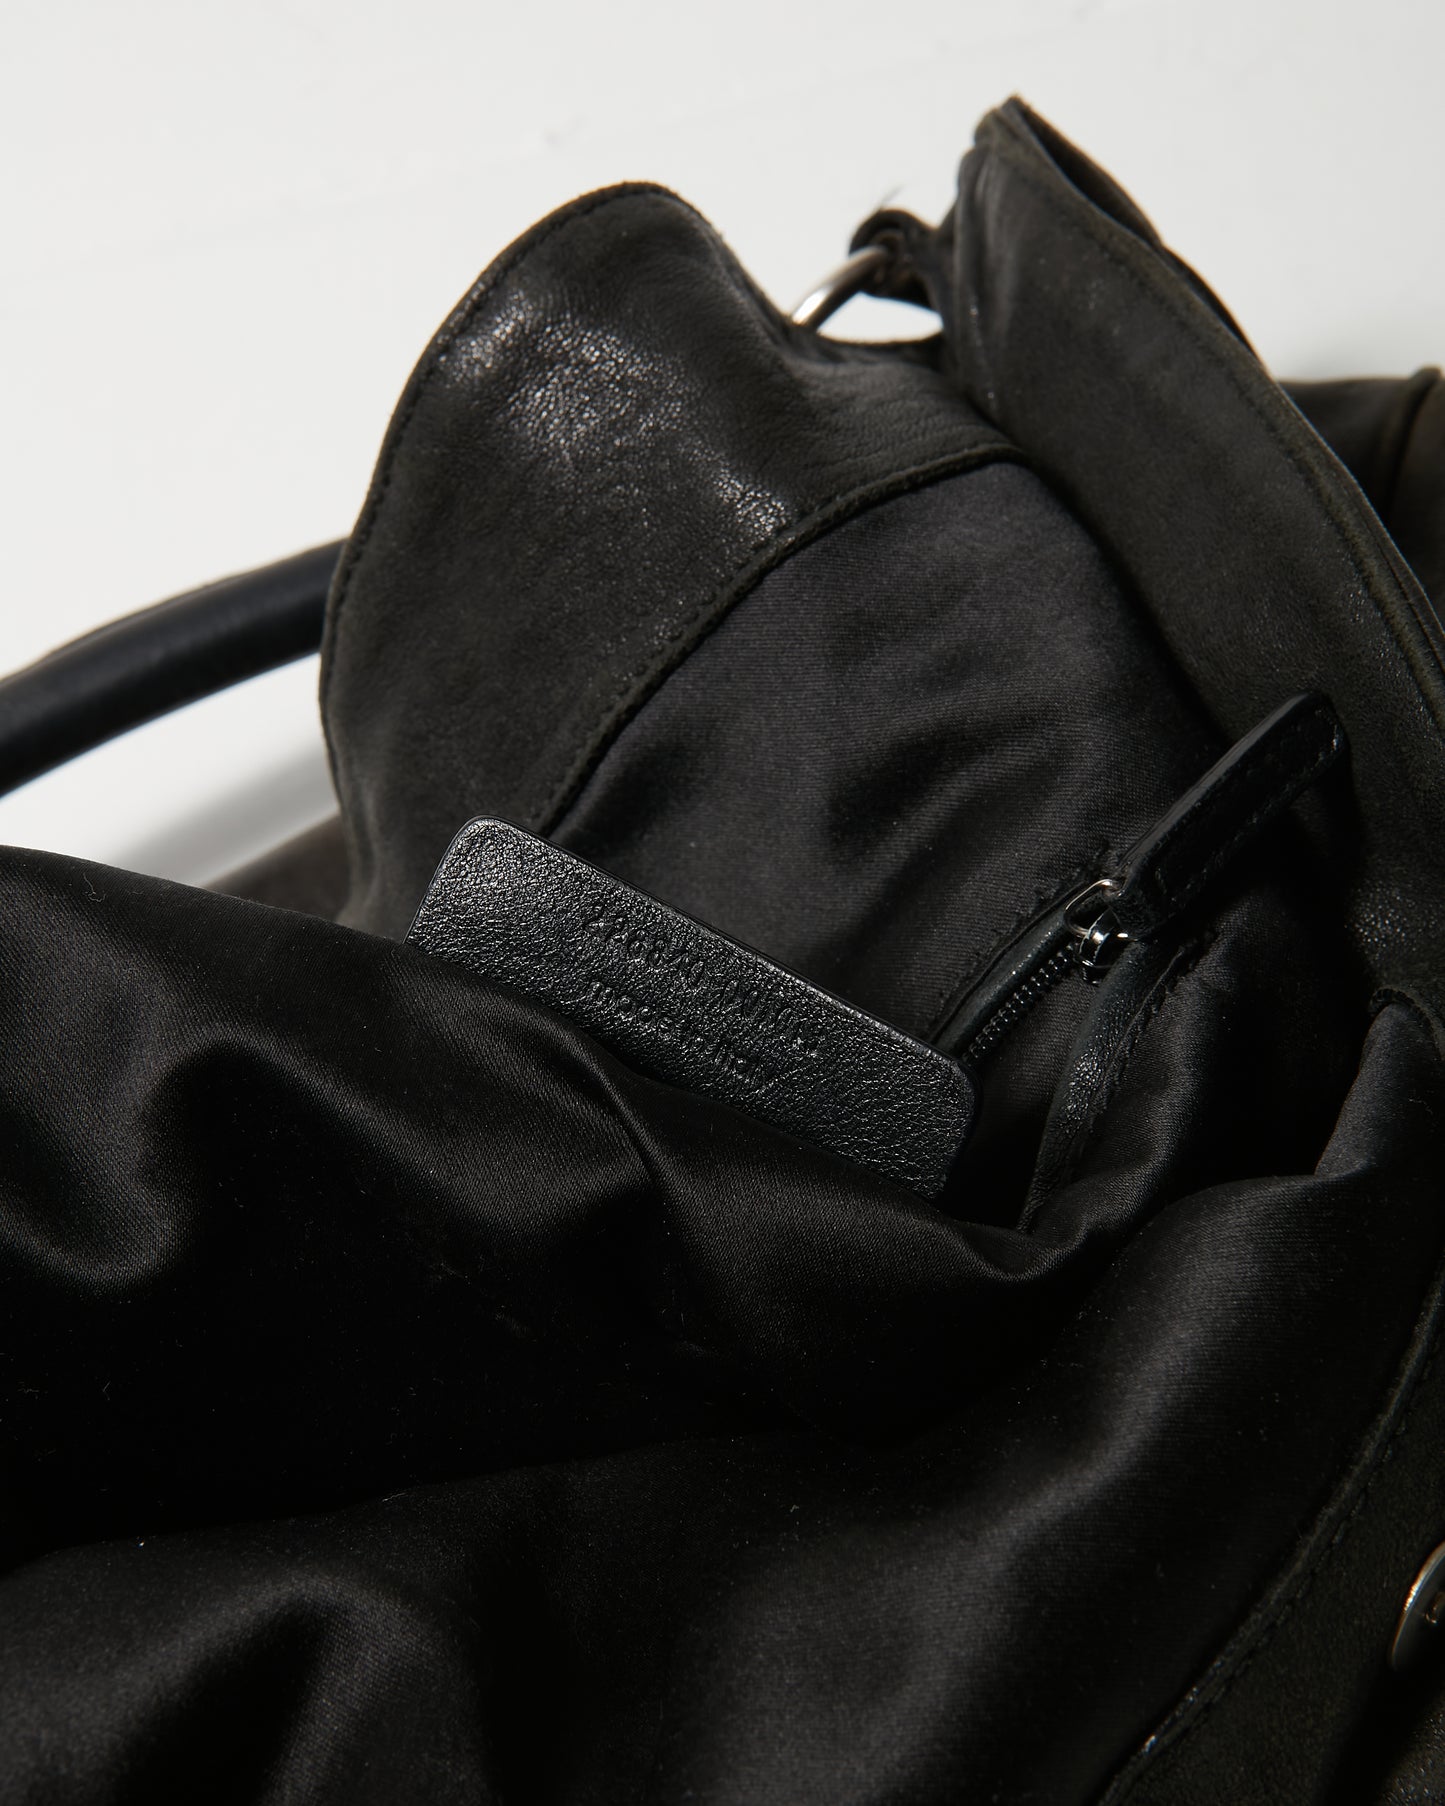 Saint Laurent Vintage Black Leather Hobo Shoulder Bag